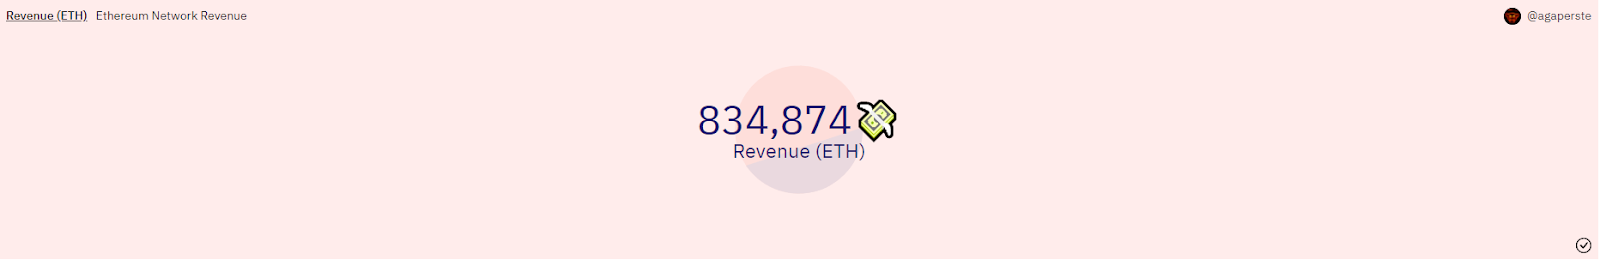 Ethereum’s revenue